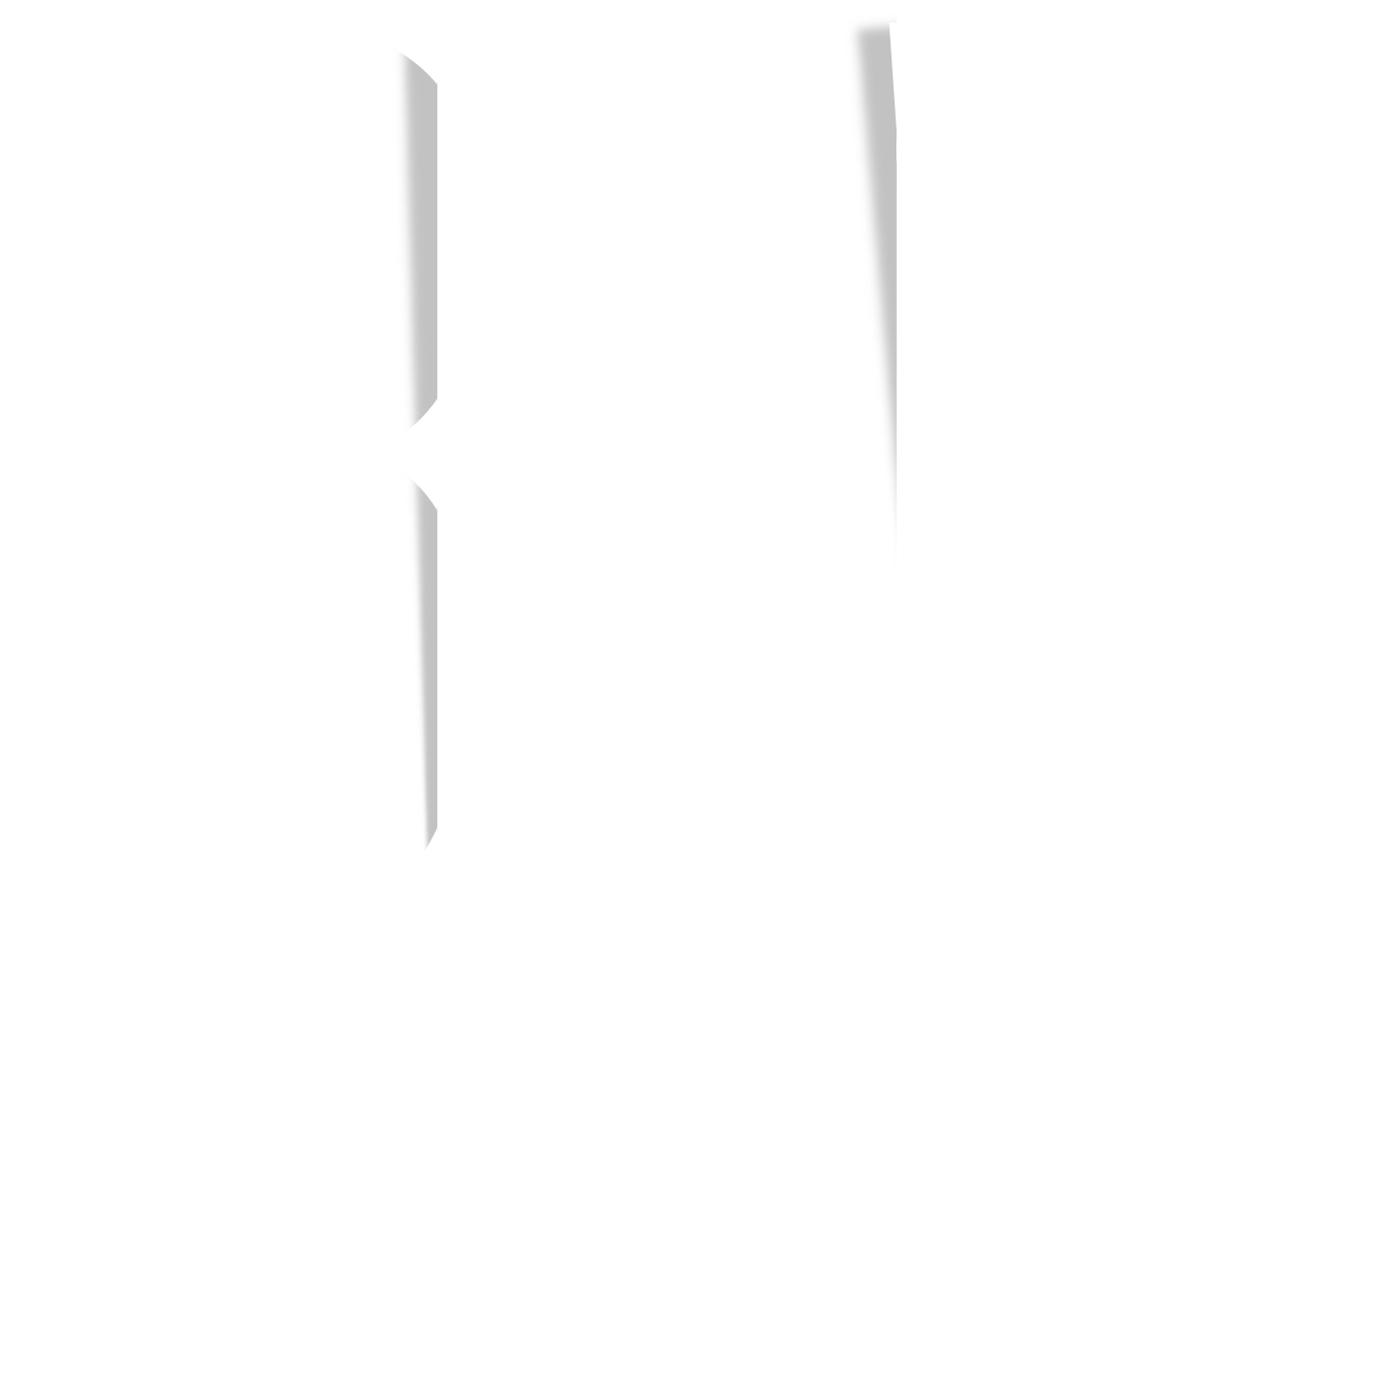 BNB Studios